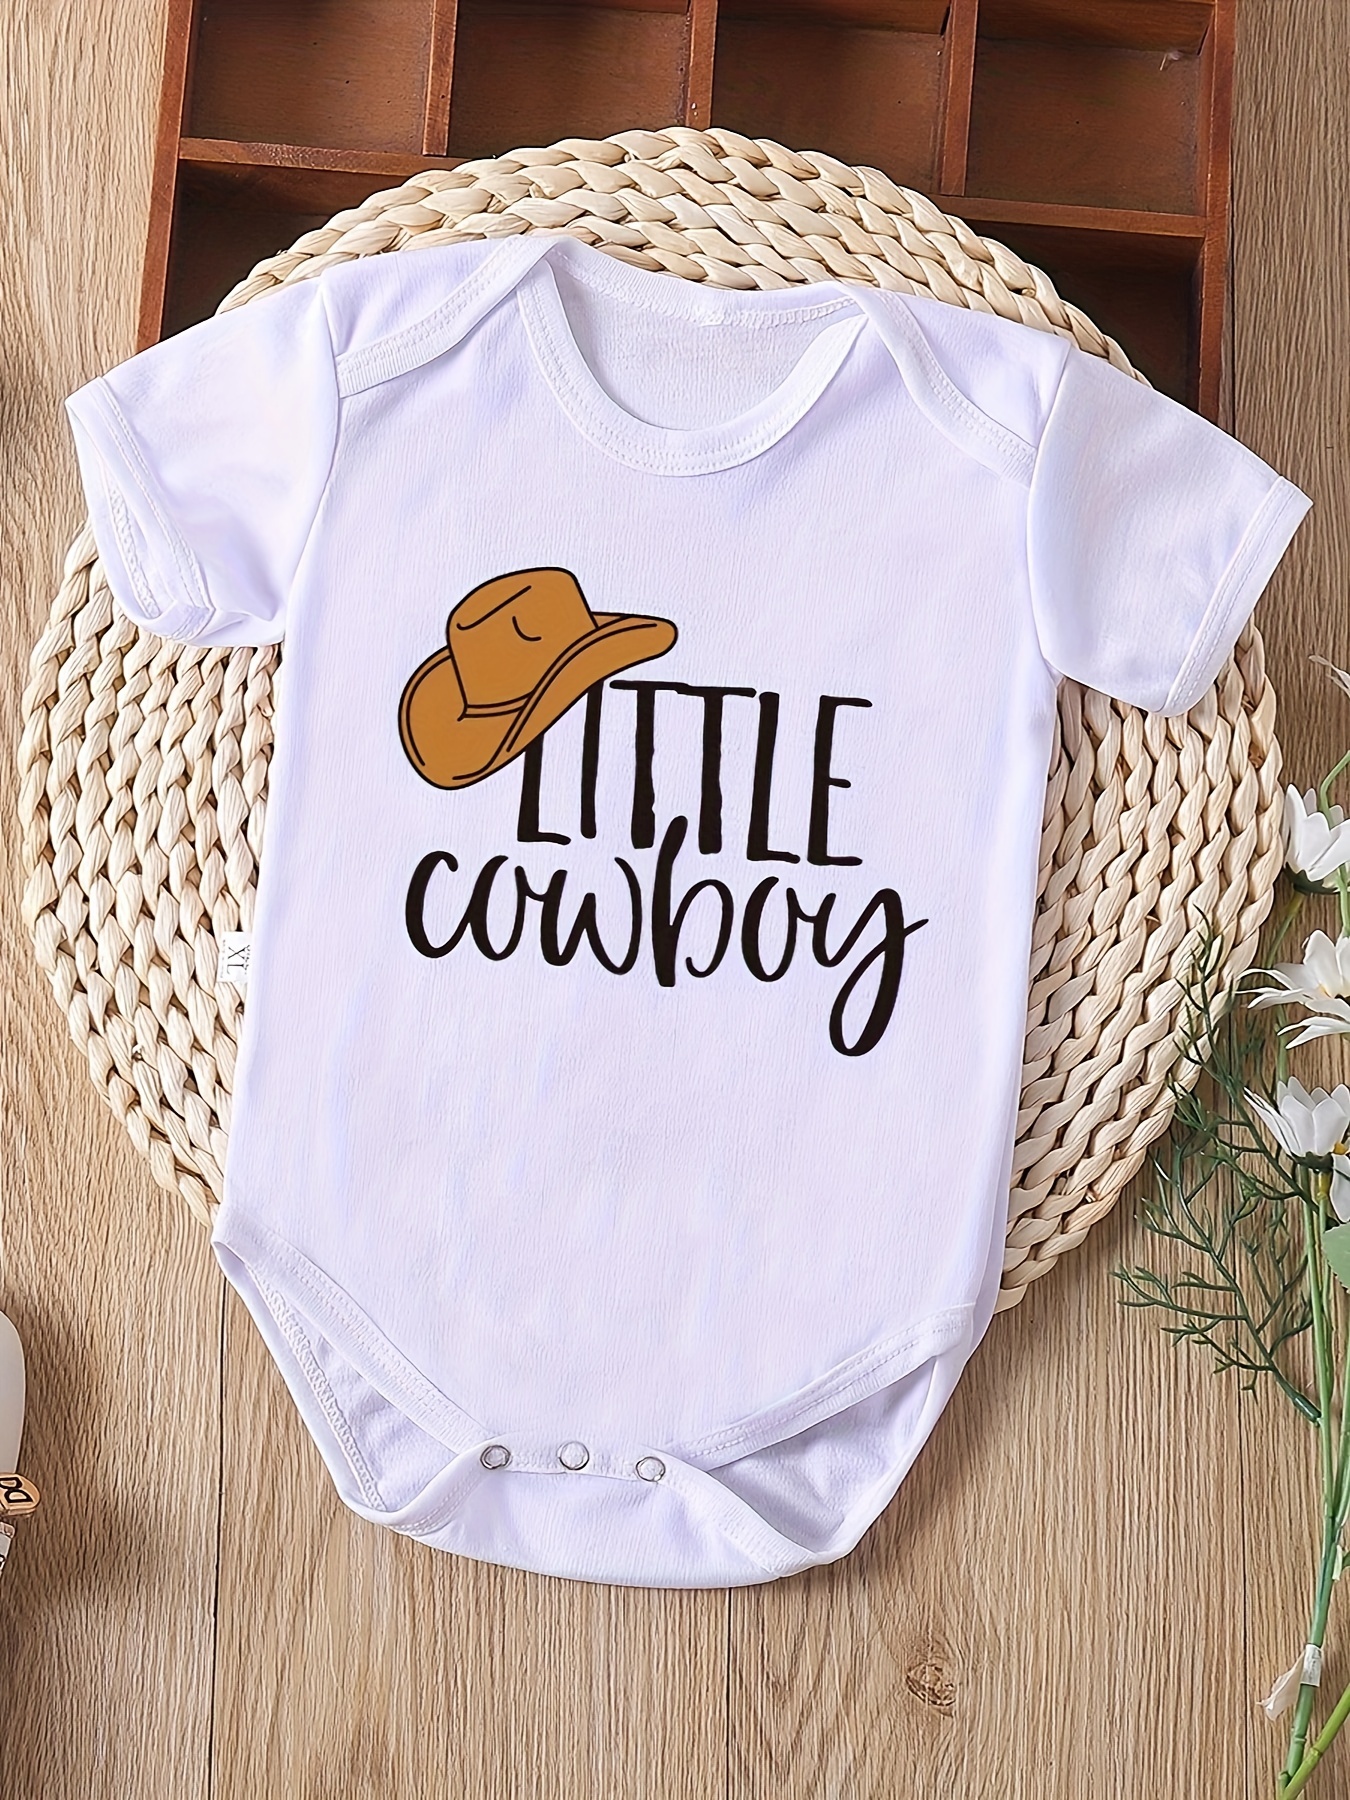 Vêtements De Bébé Cowboy - Livraison Gratuite Pour Les Nouveaux